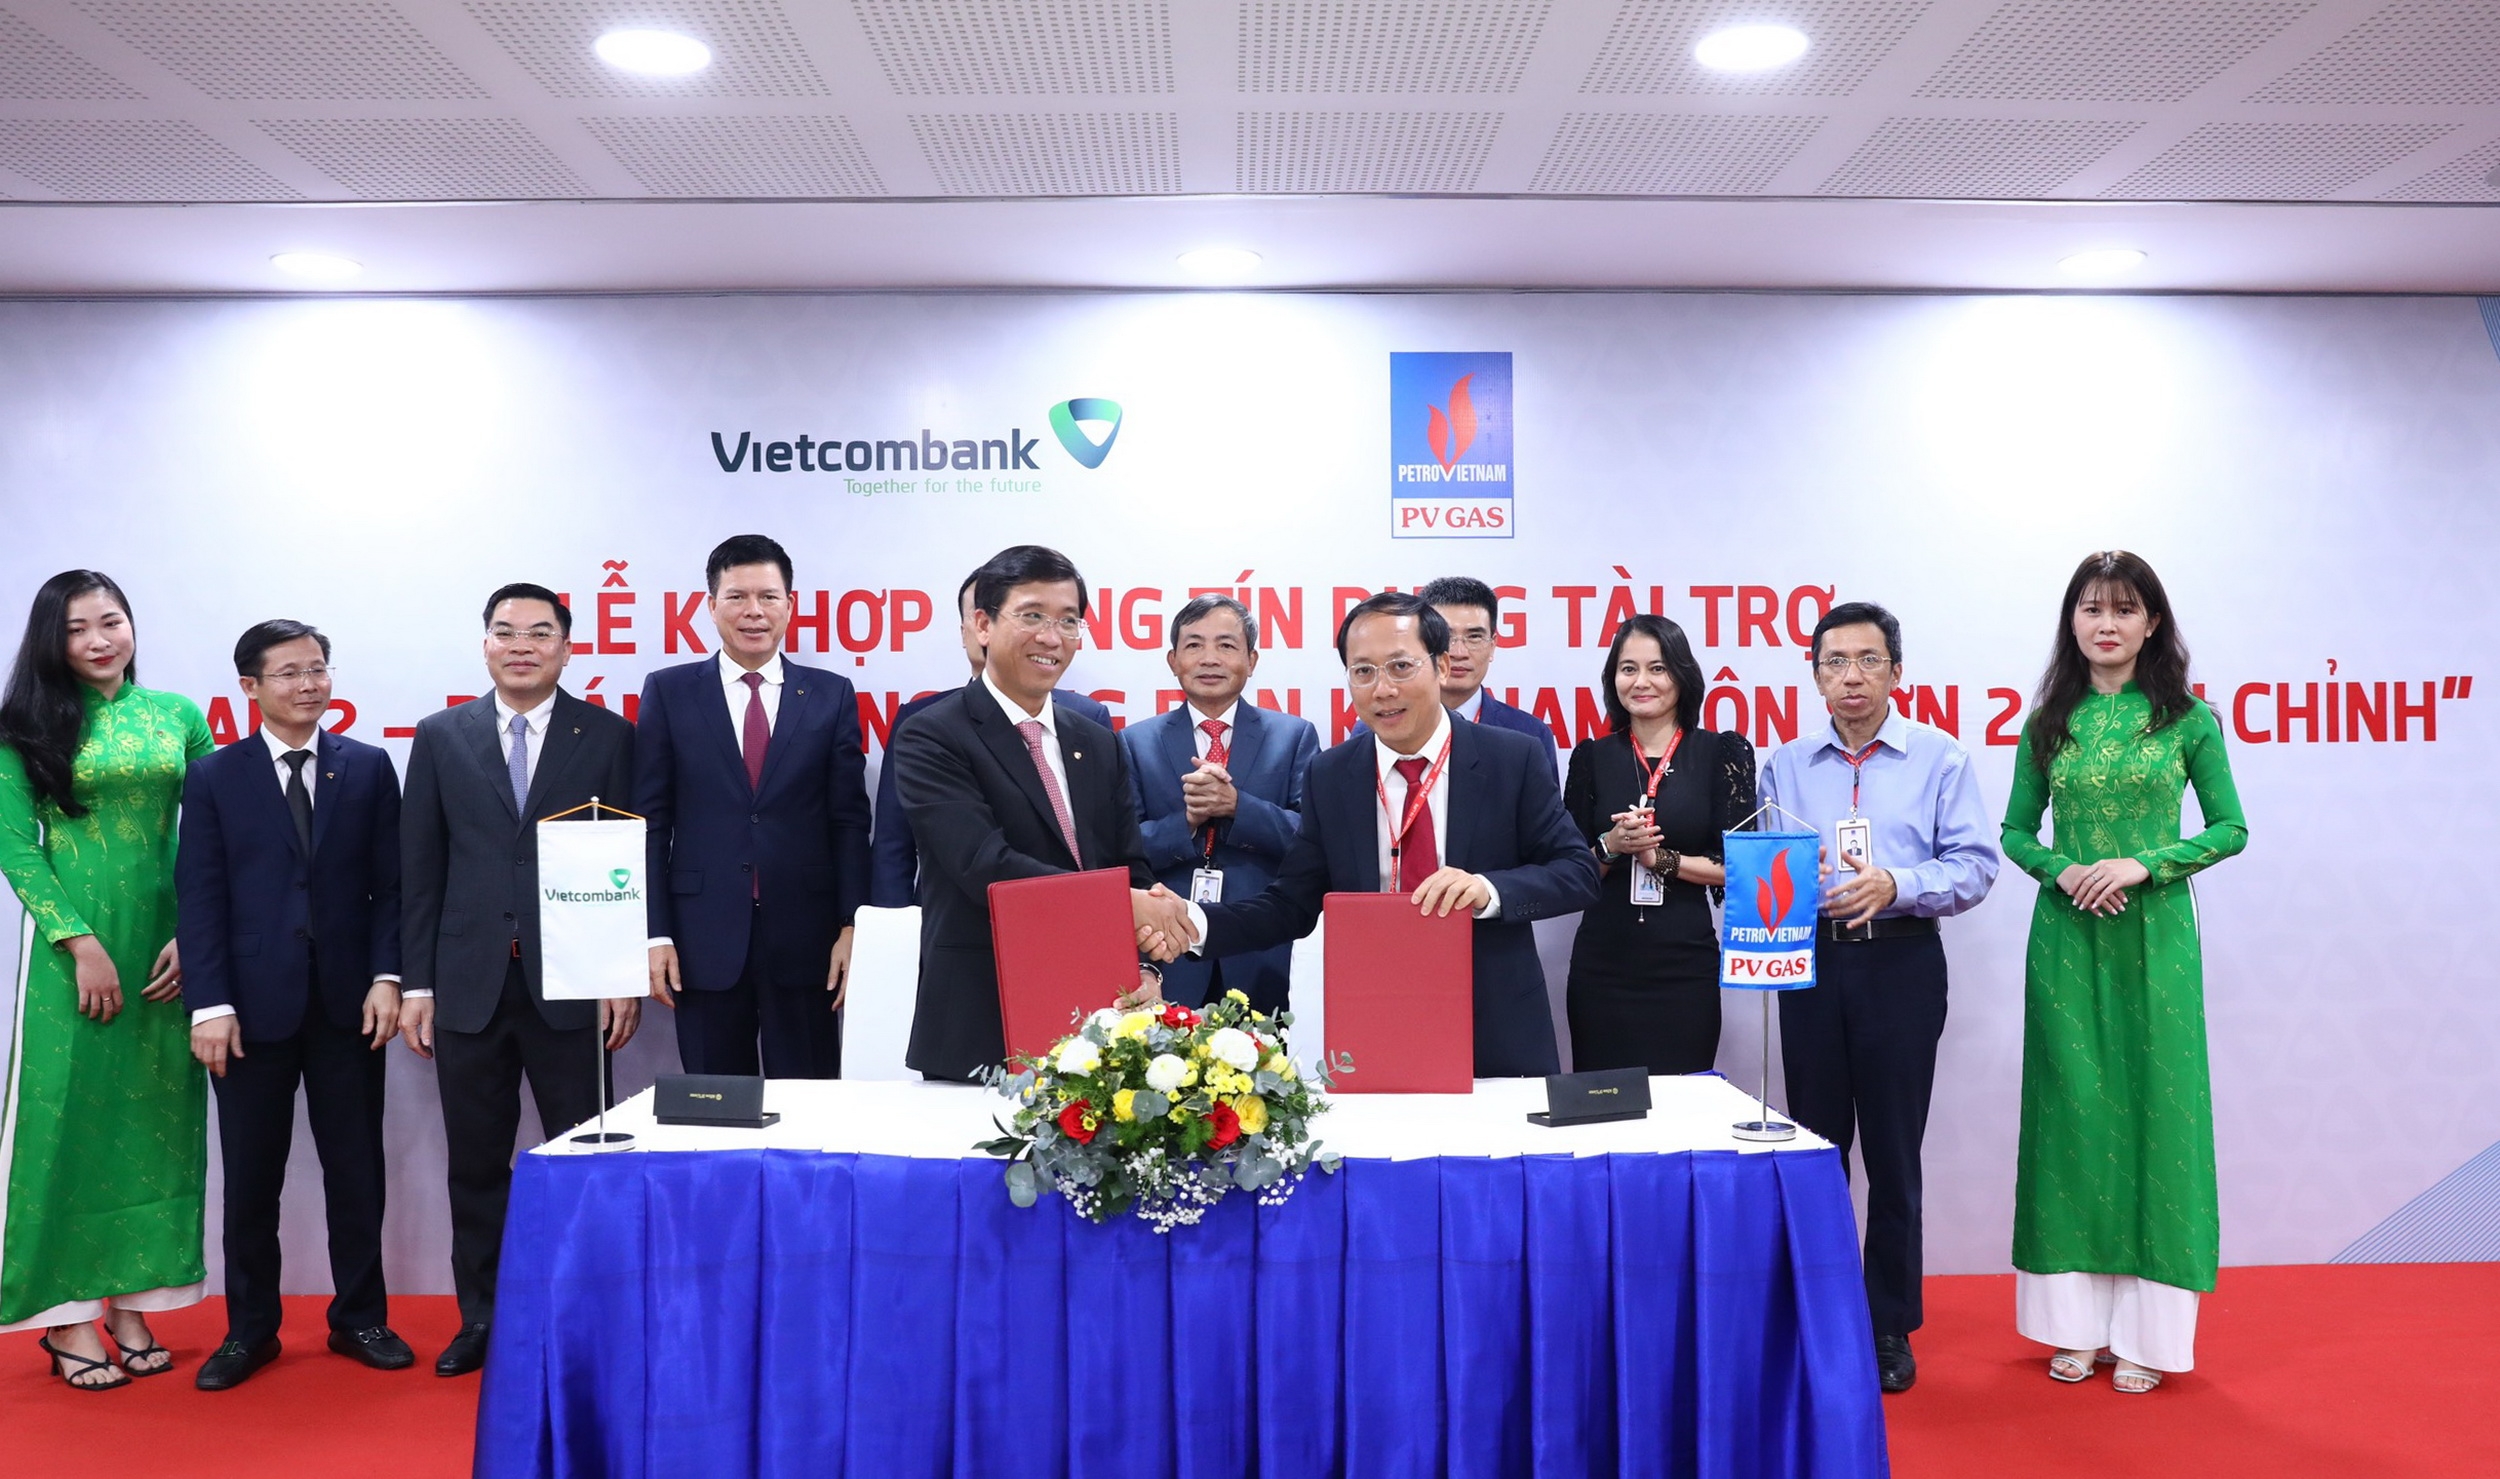 Trao chứng nhận ký kết, mở ra một giai đoạn hợp tác mới giữa PV GAS và Vietcombank